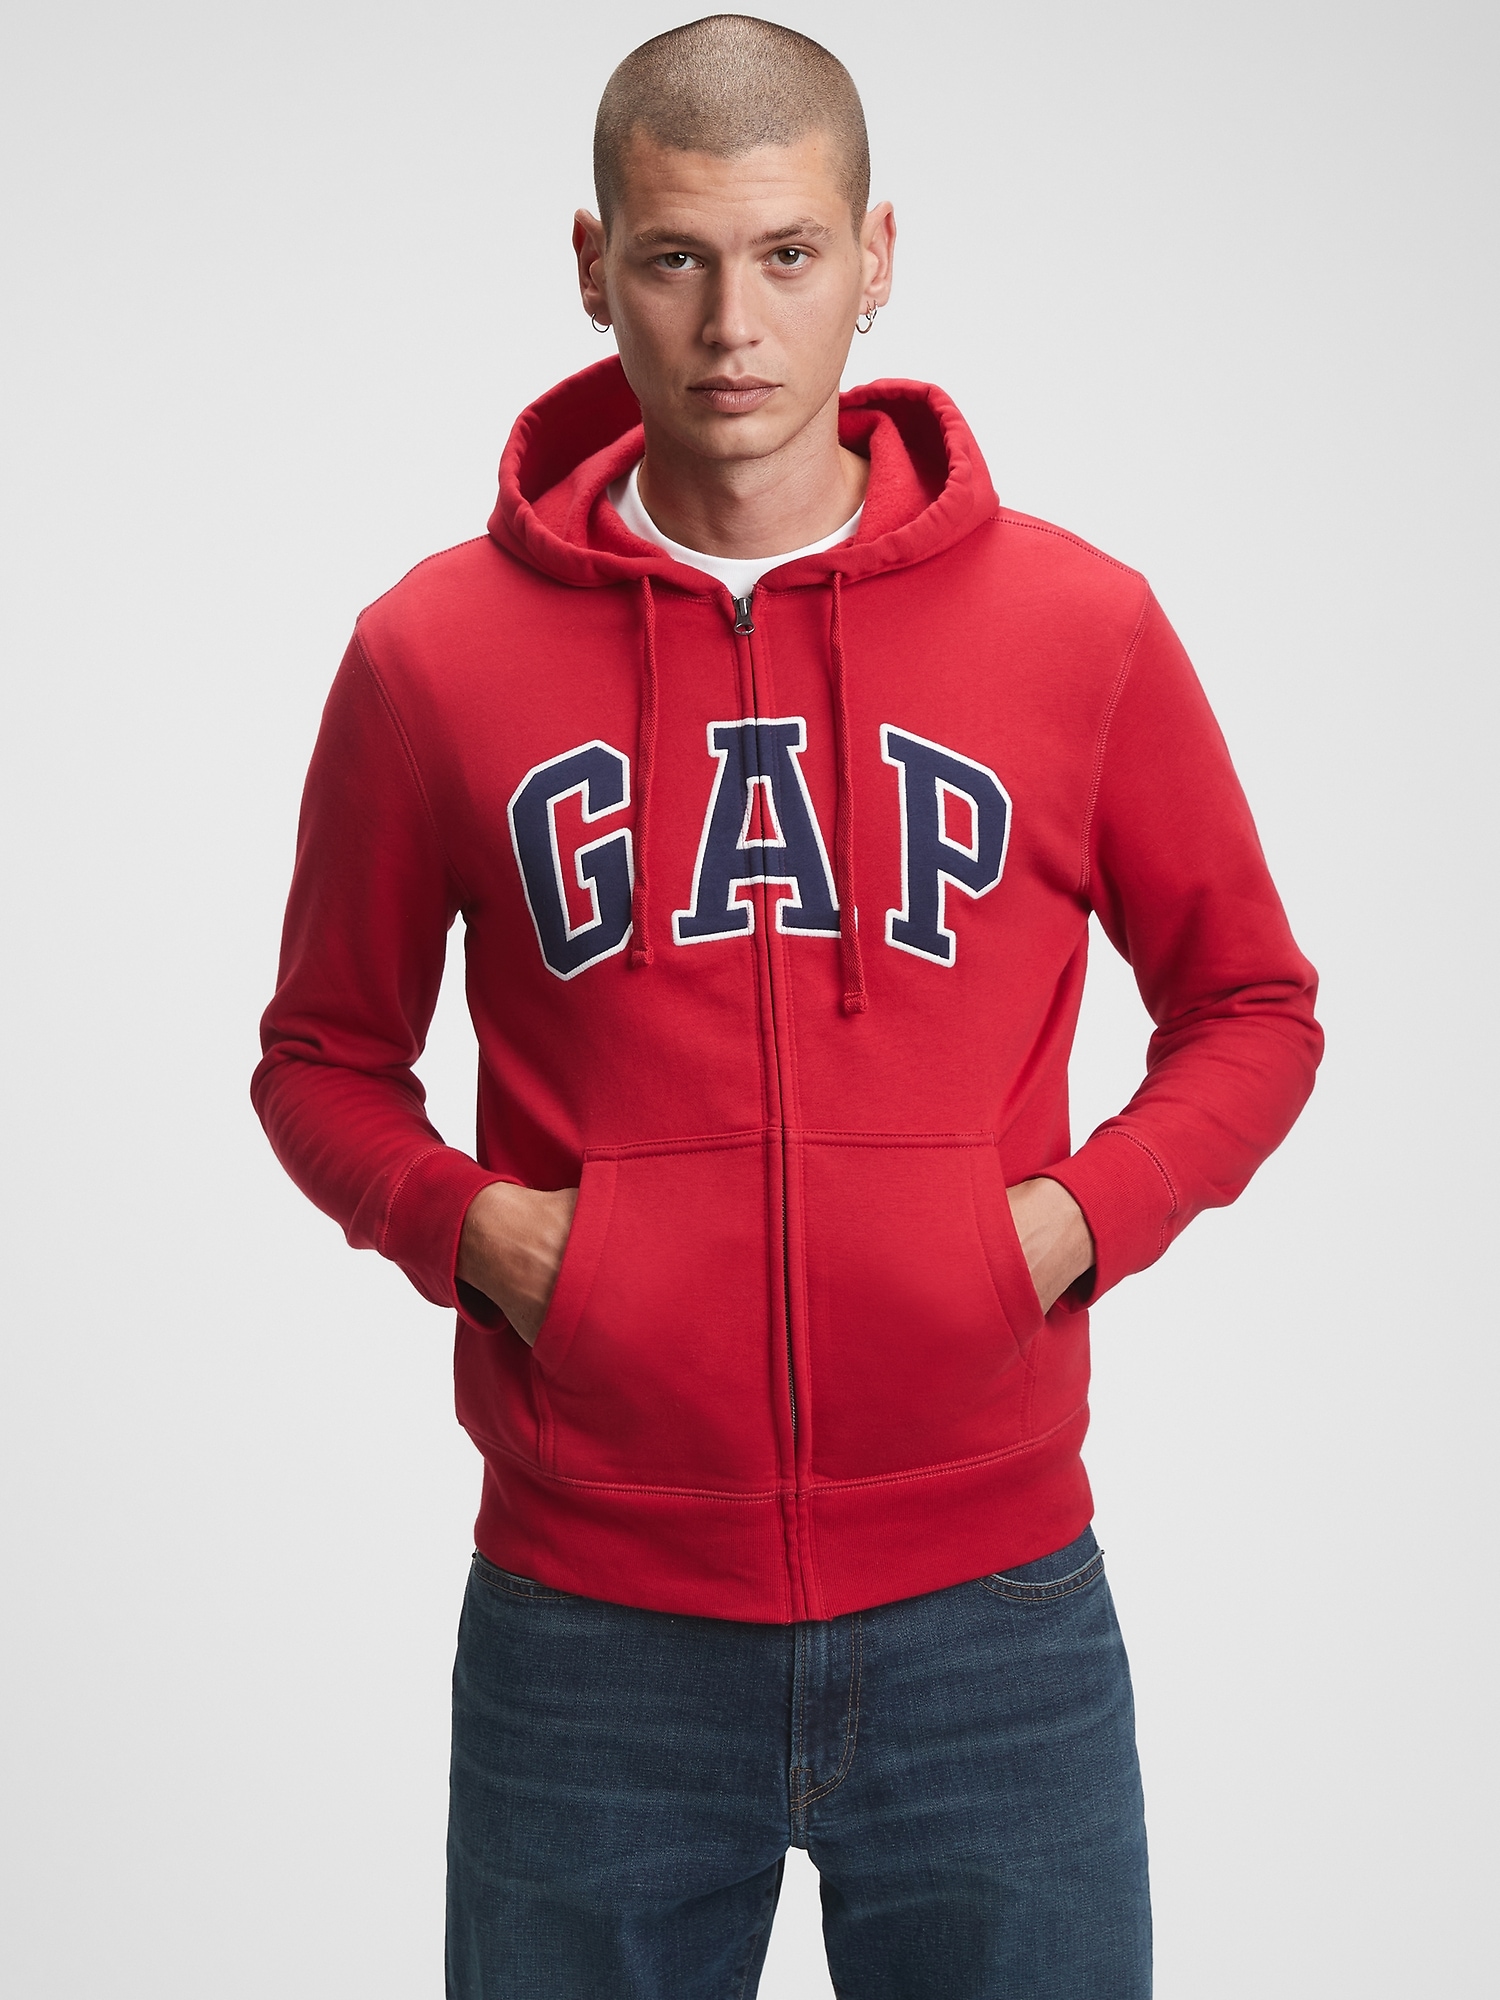 Buy Gap Drawstring Hoodie from the Gap online shop